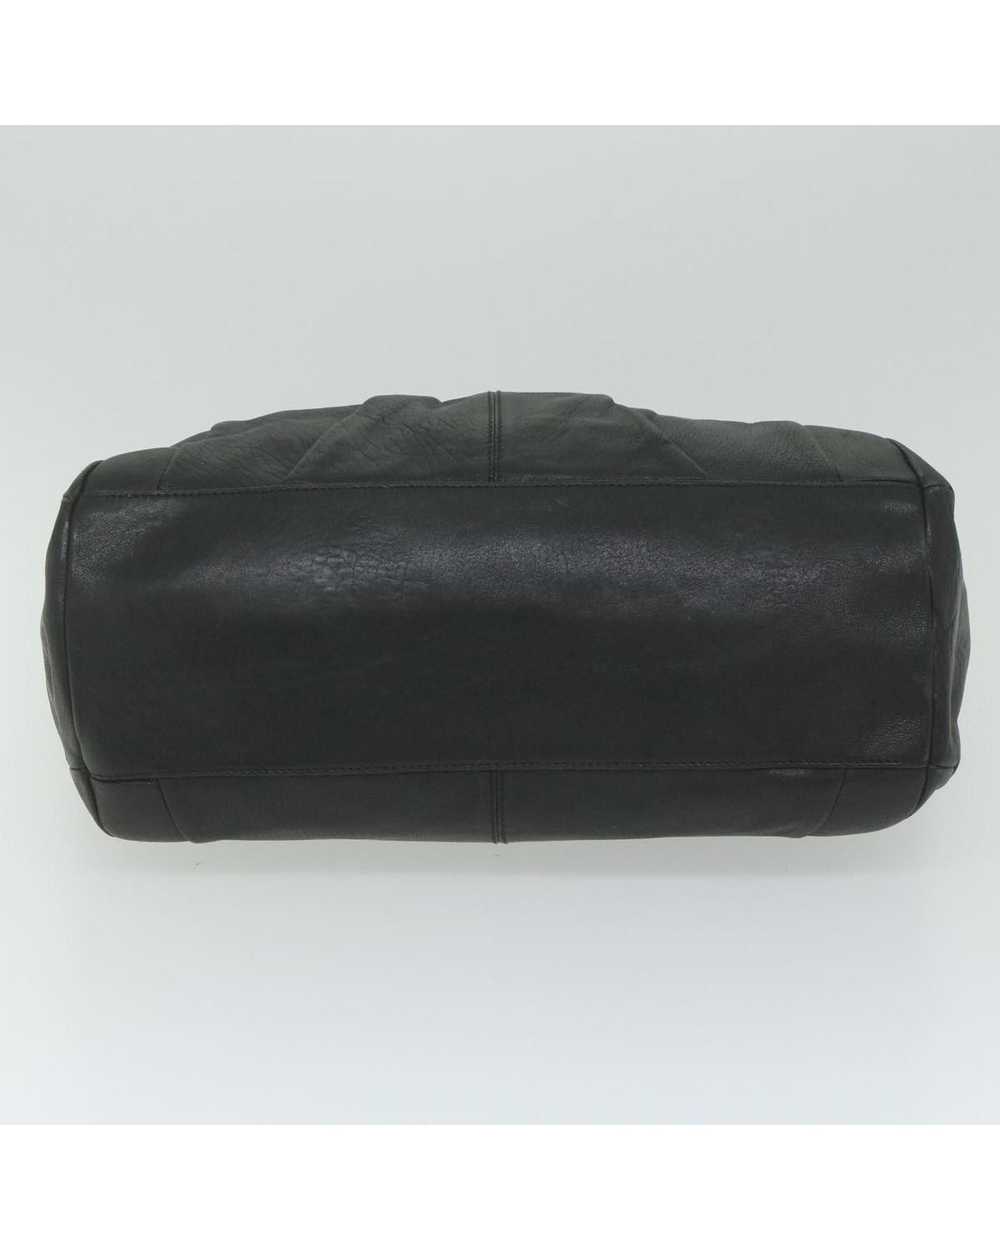 Salvatore Ferragamo Black Leather Tote Bag by Ita… - image 9